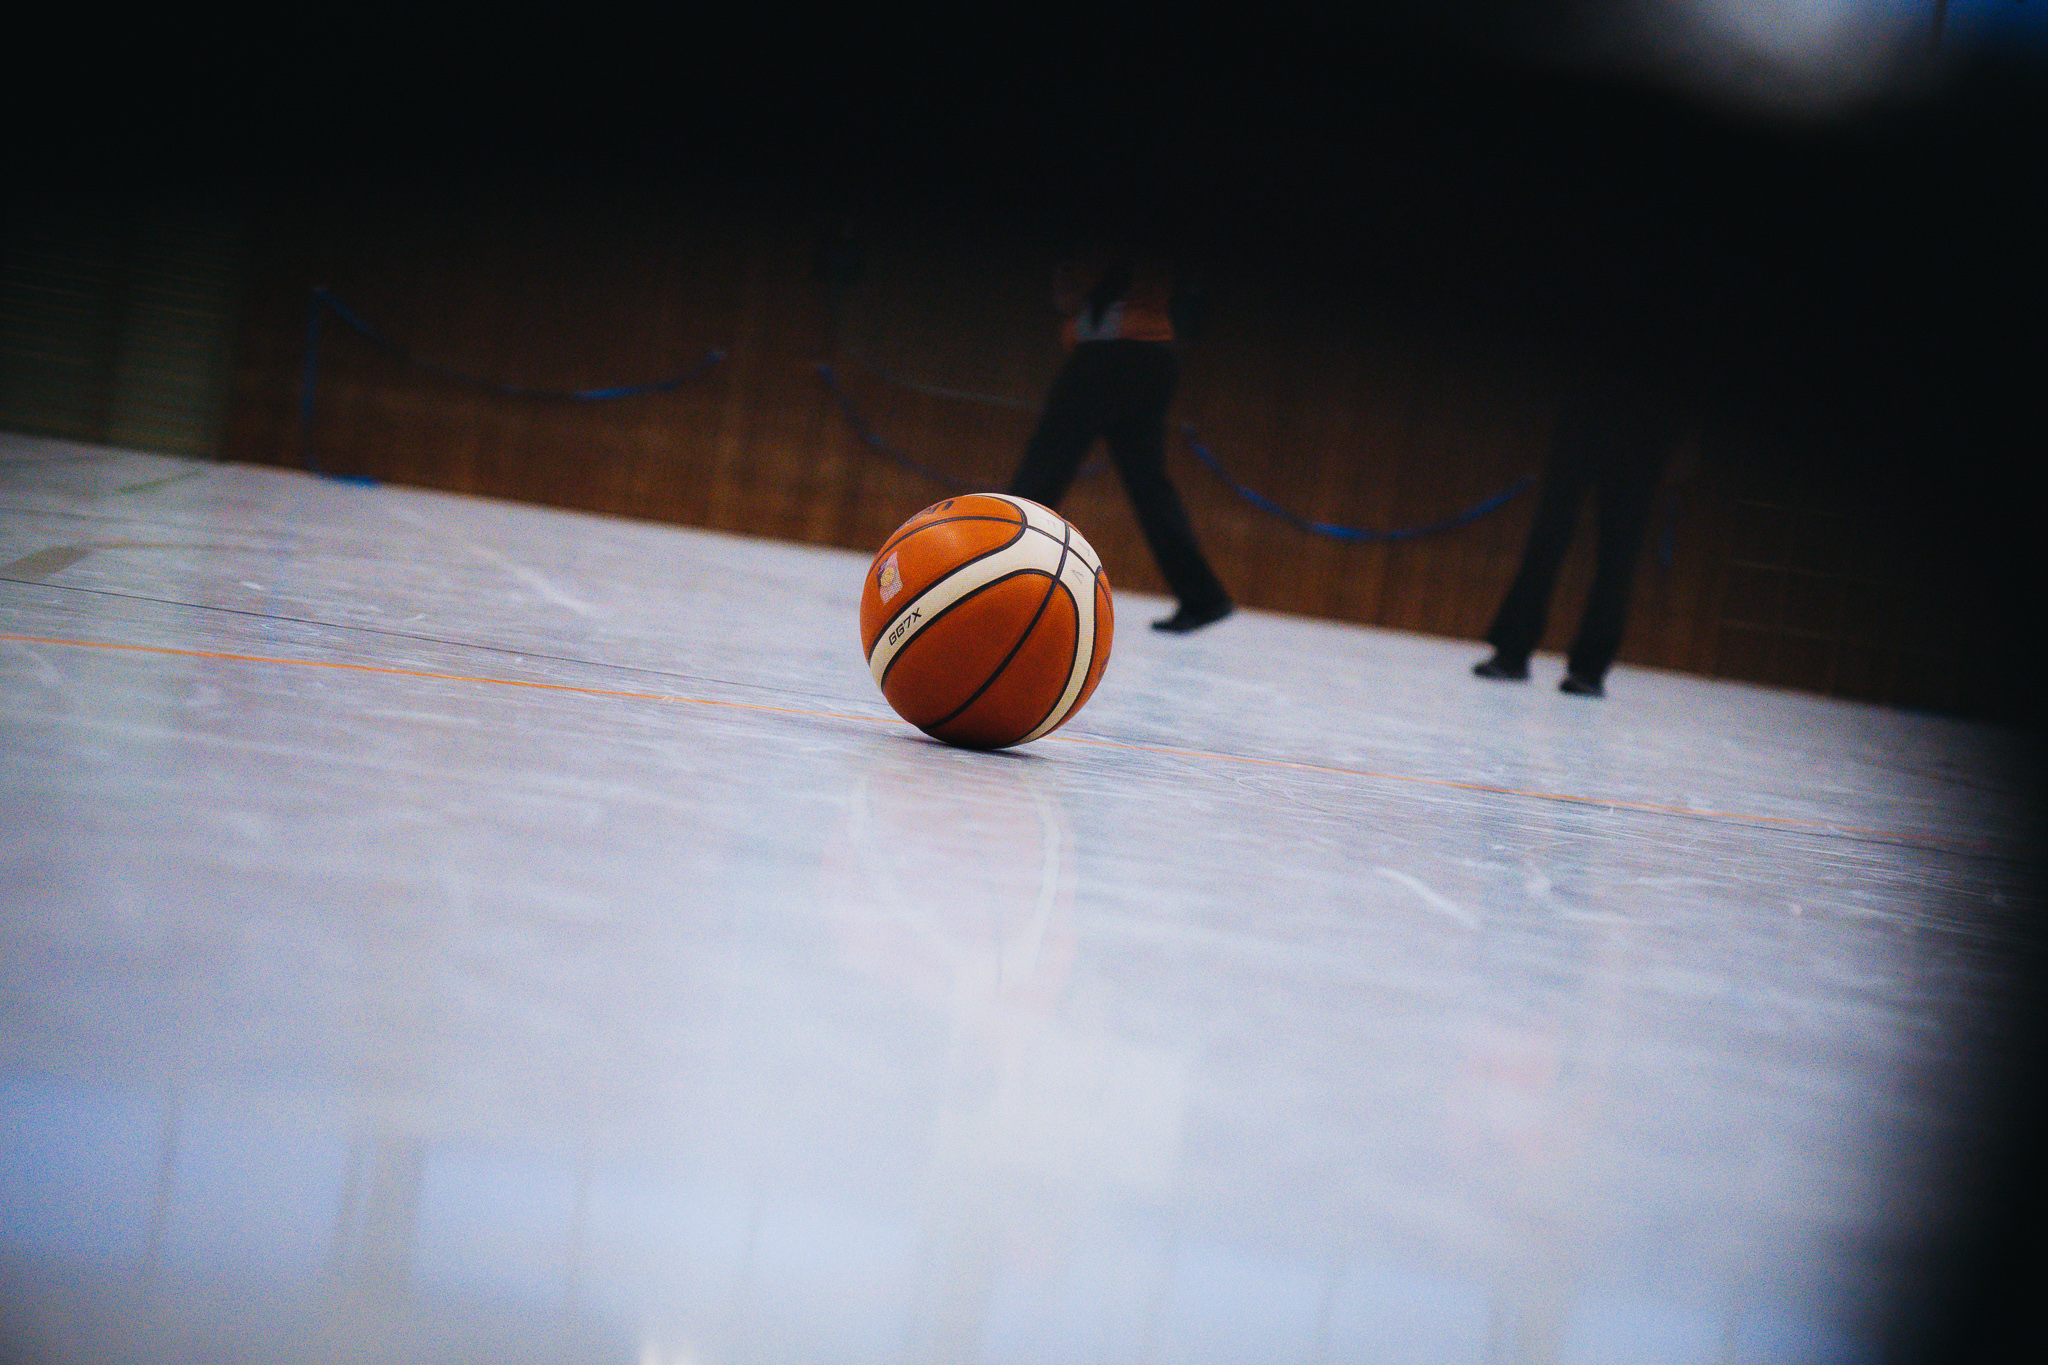 Das Bild zeigt einen Basketball auf dem Hallenboden während einer Auszeit.